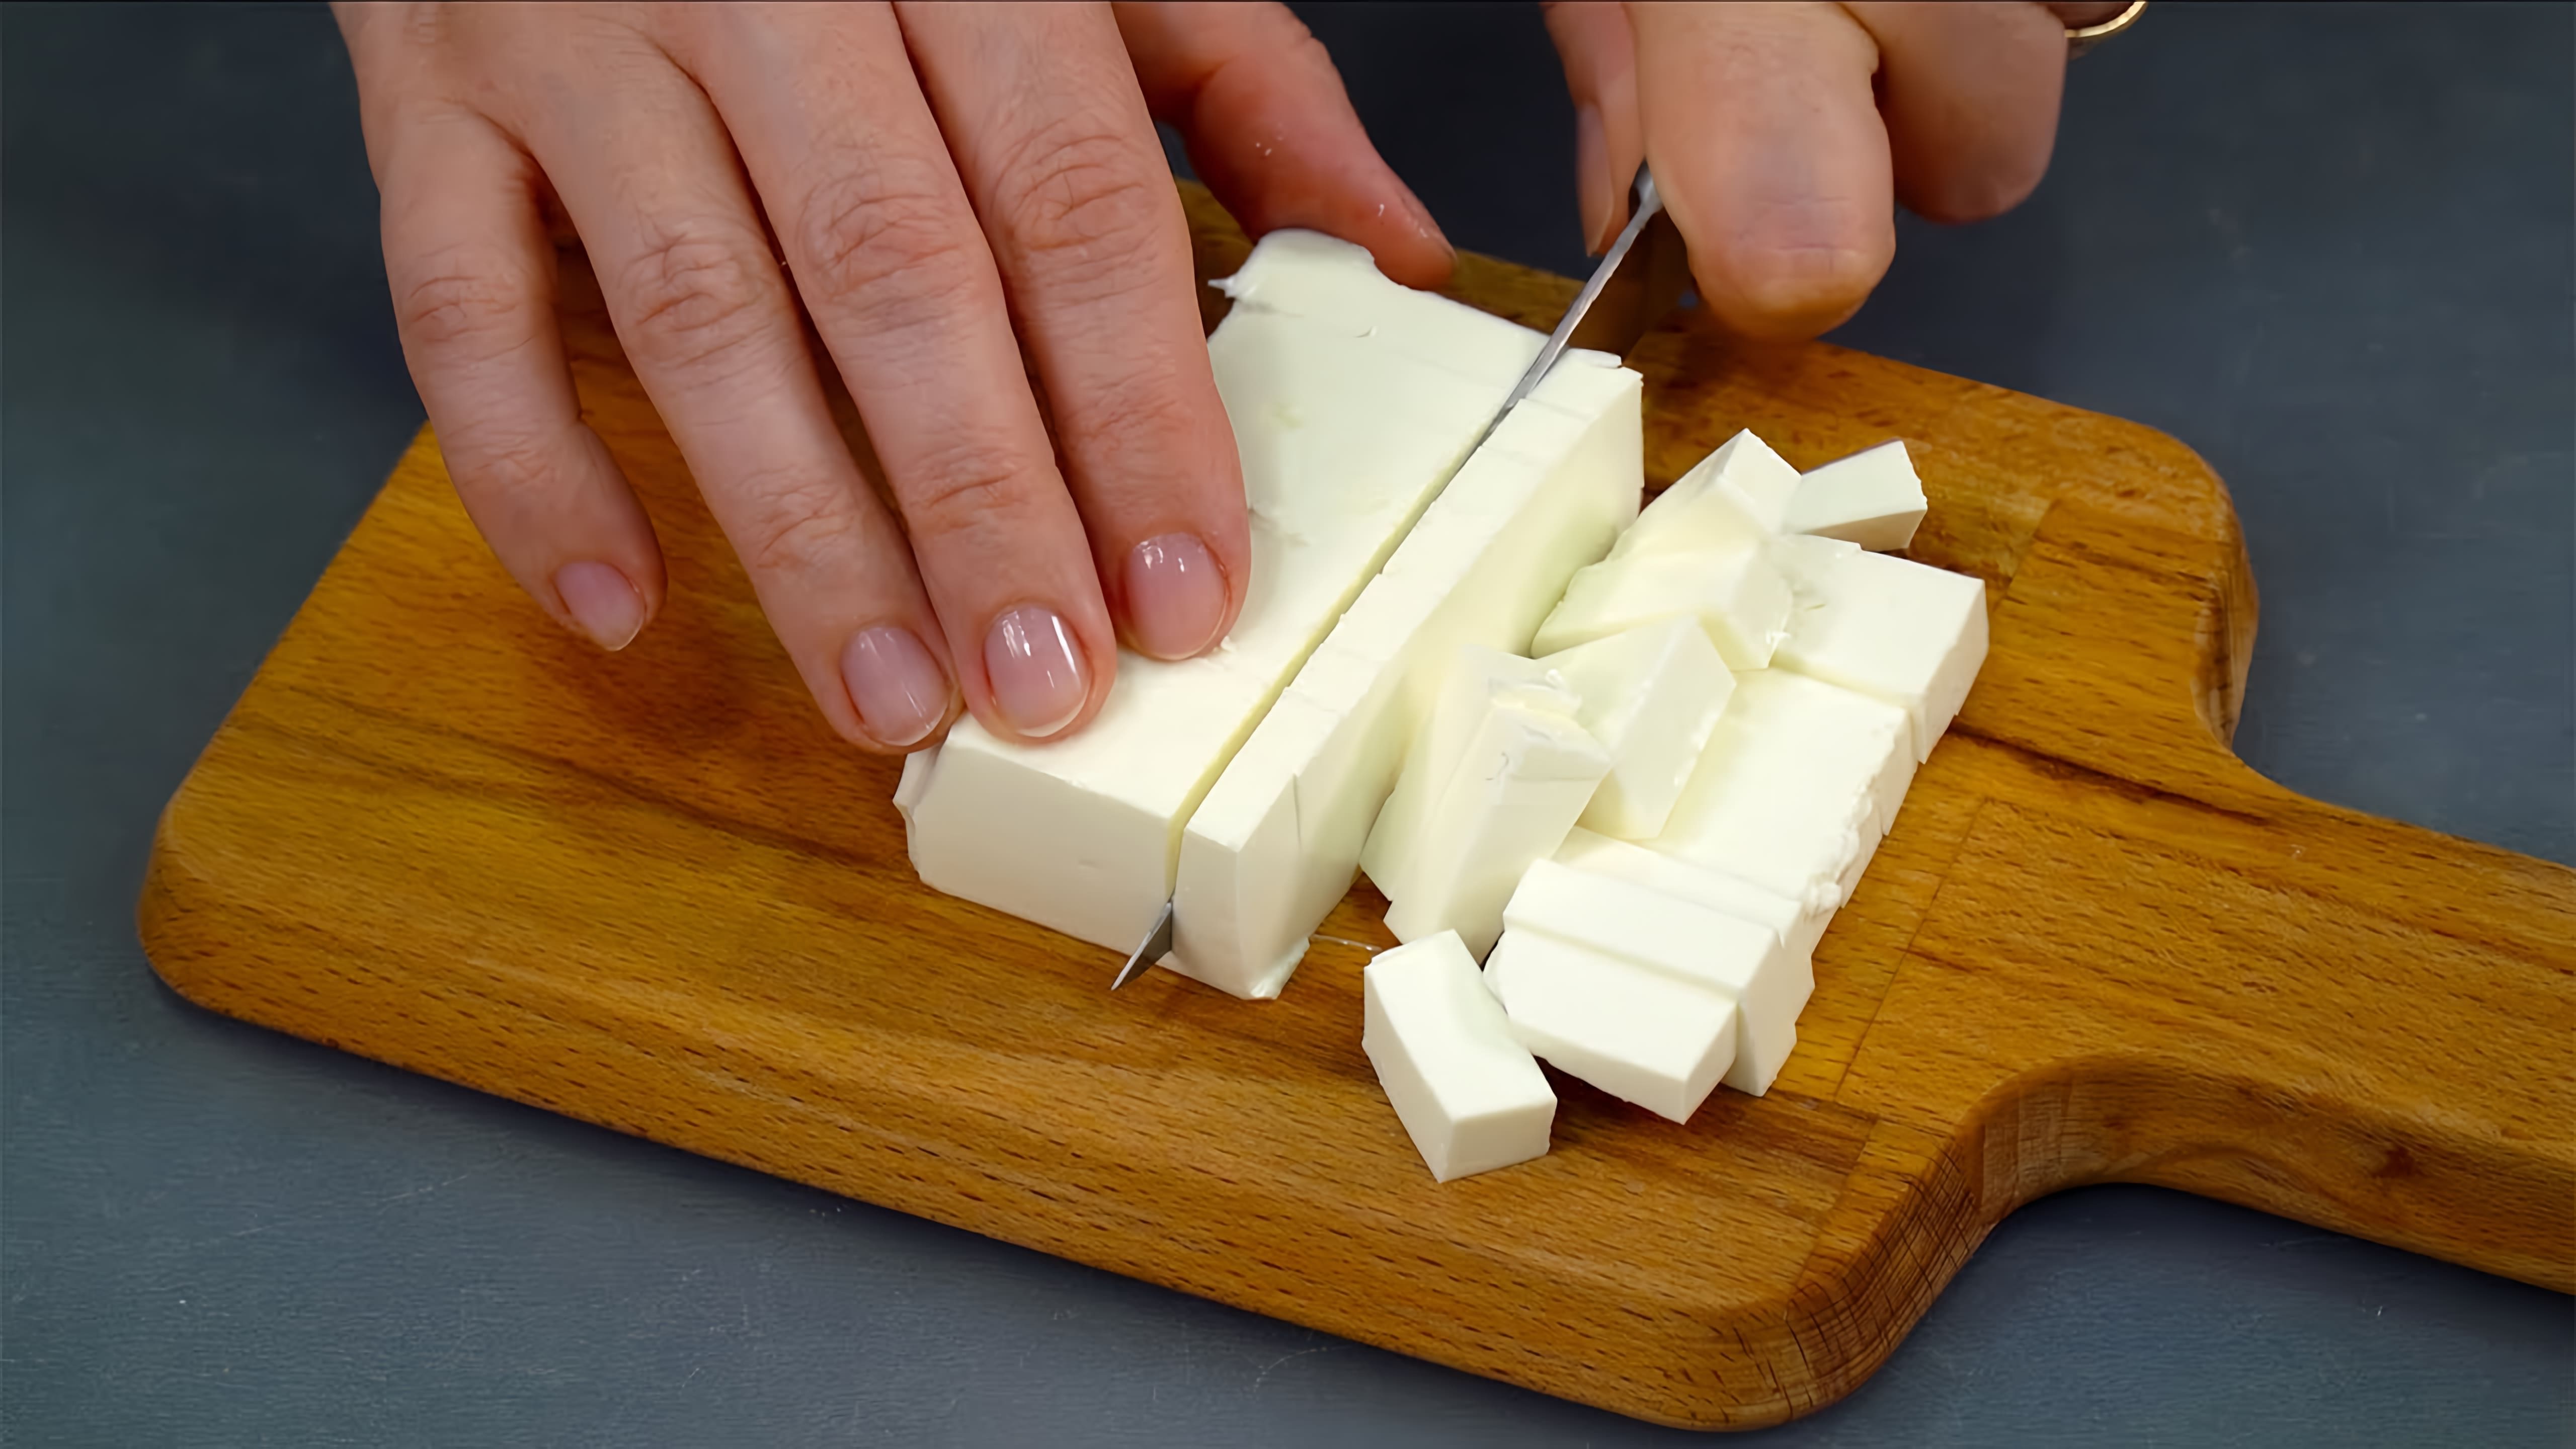 В этом видео демонстрируется рецепт приготовления куриного филе с рассольным сыром и картофелем в мультиварке